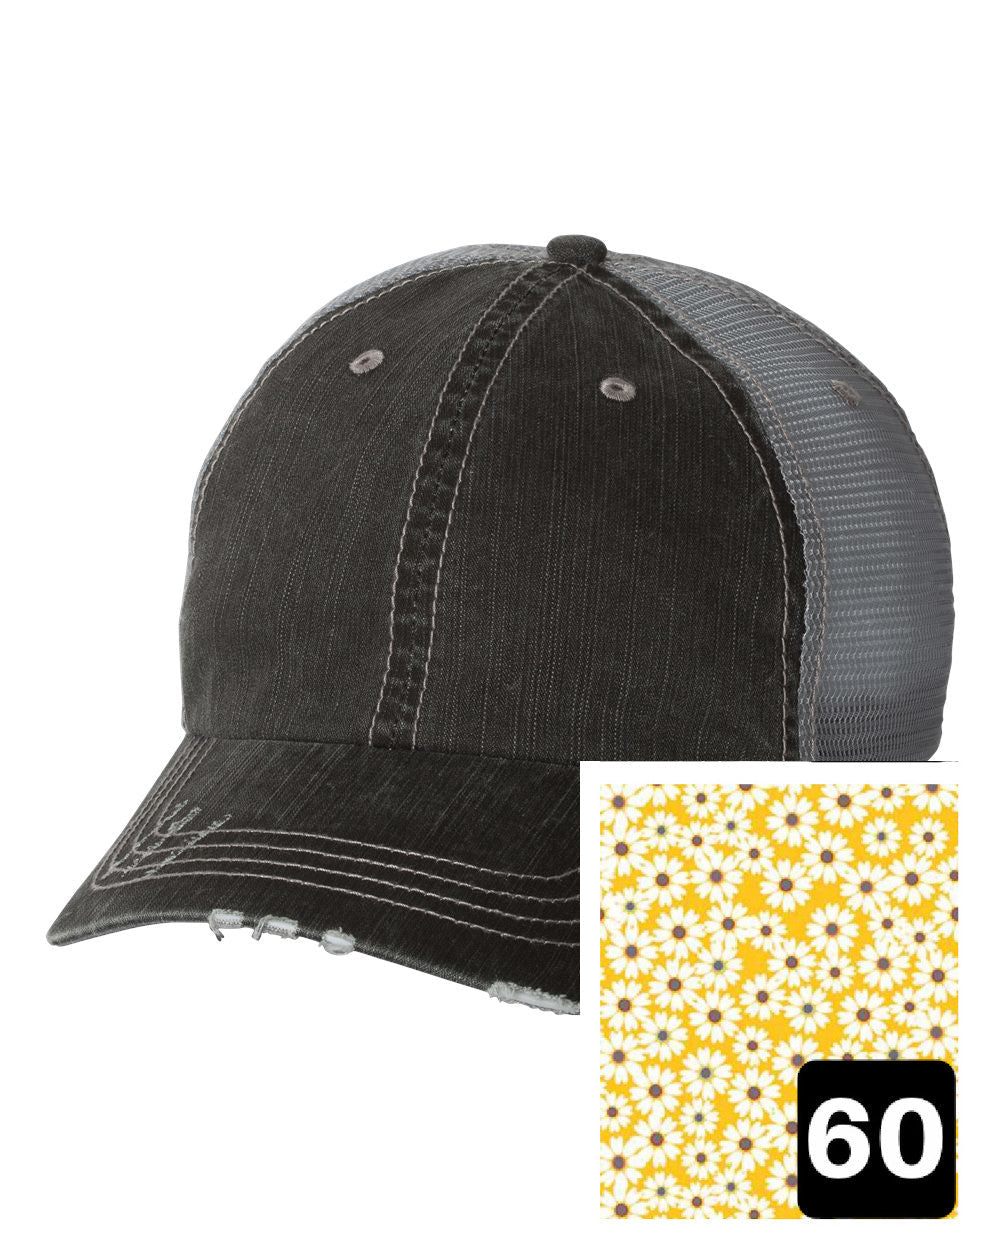 Oklahoma Hat | Gray Distressed Trucker Cap | Many Fabric Choices